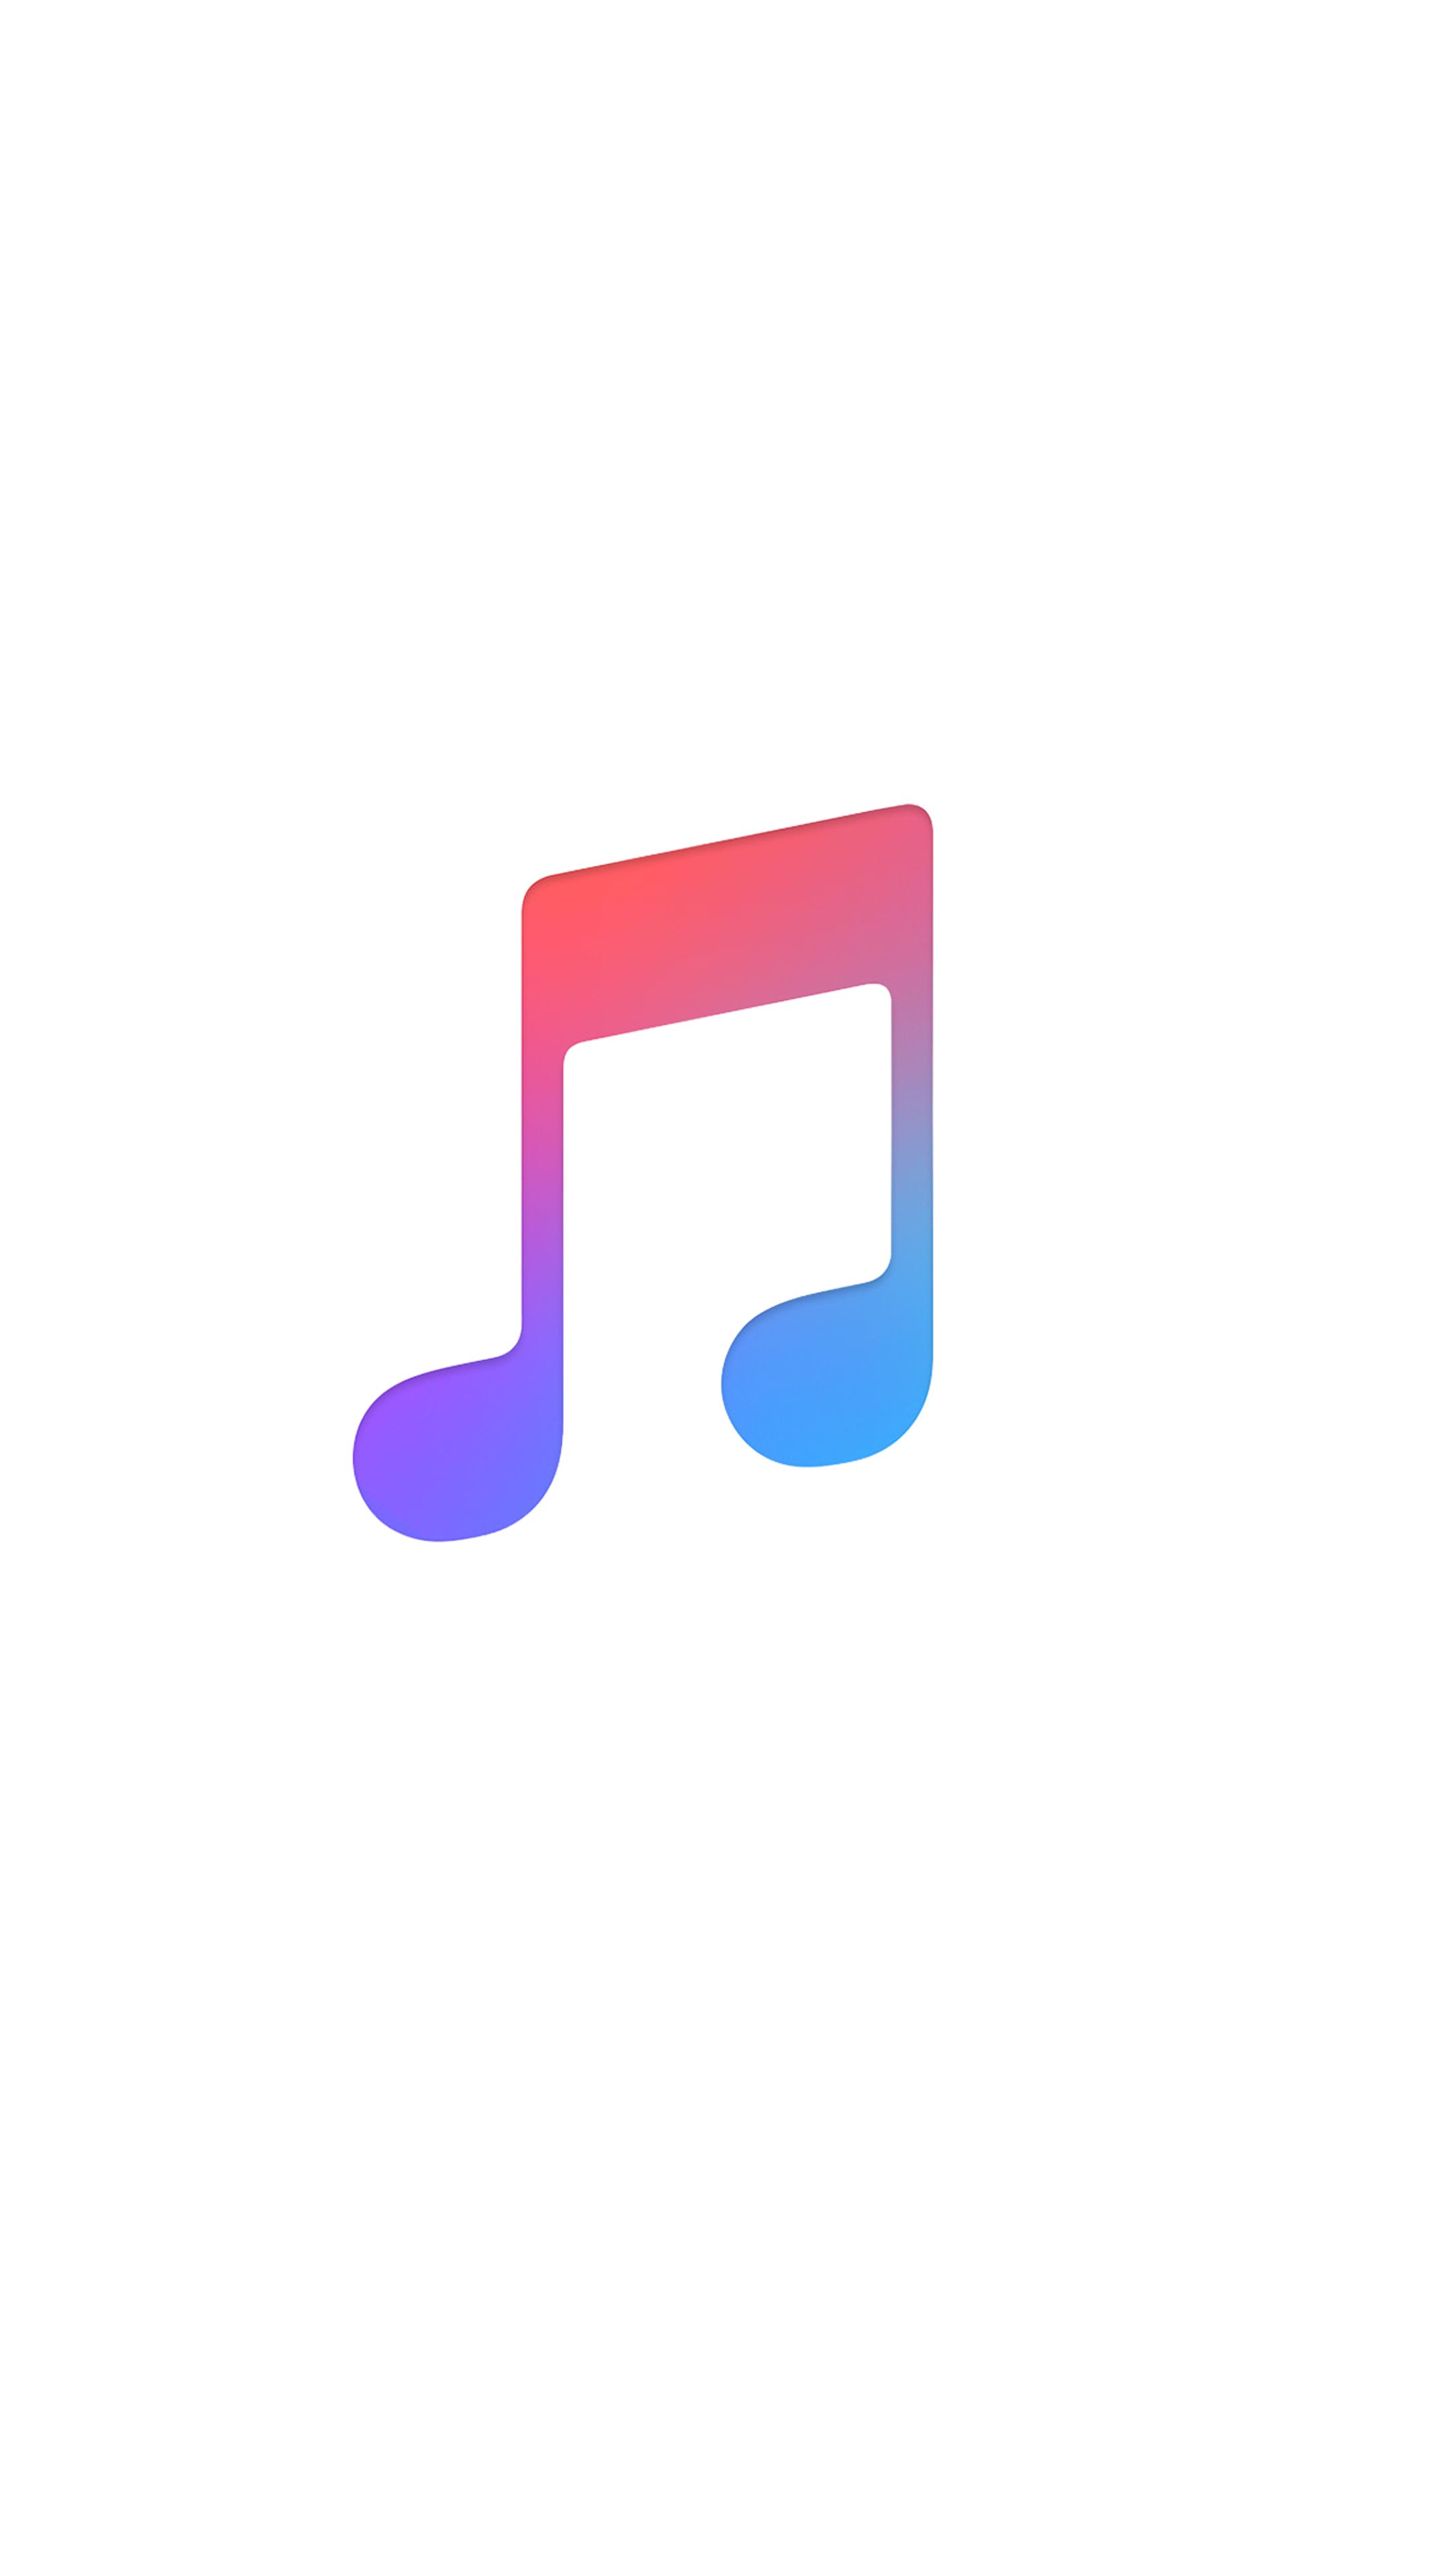 Apple music logo wallpaper. Music logo, Apple wallpaper, Music